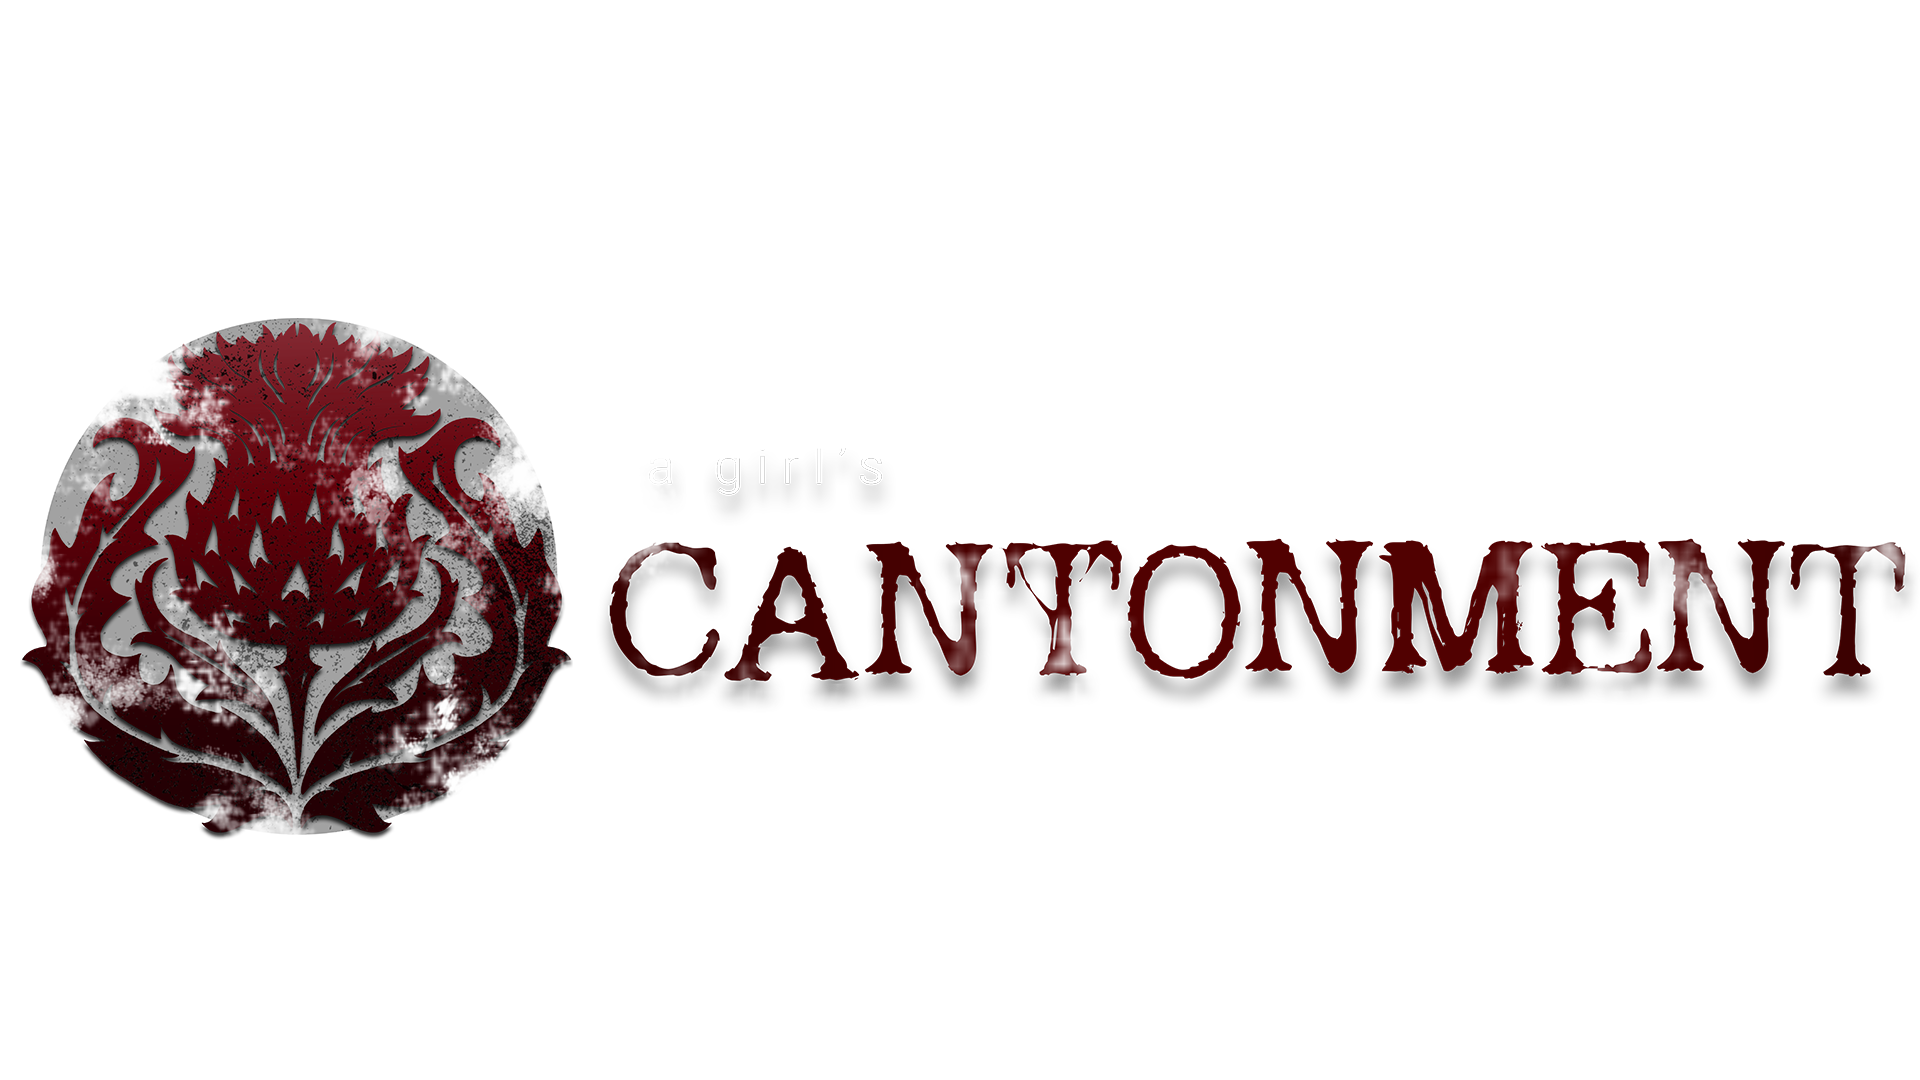 A Girl's Cantonment